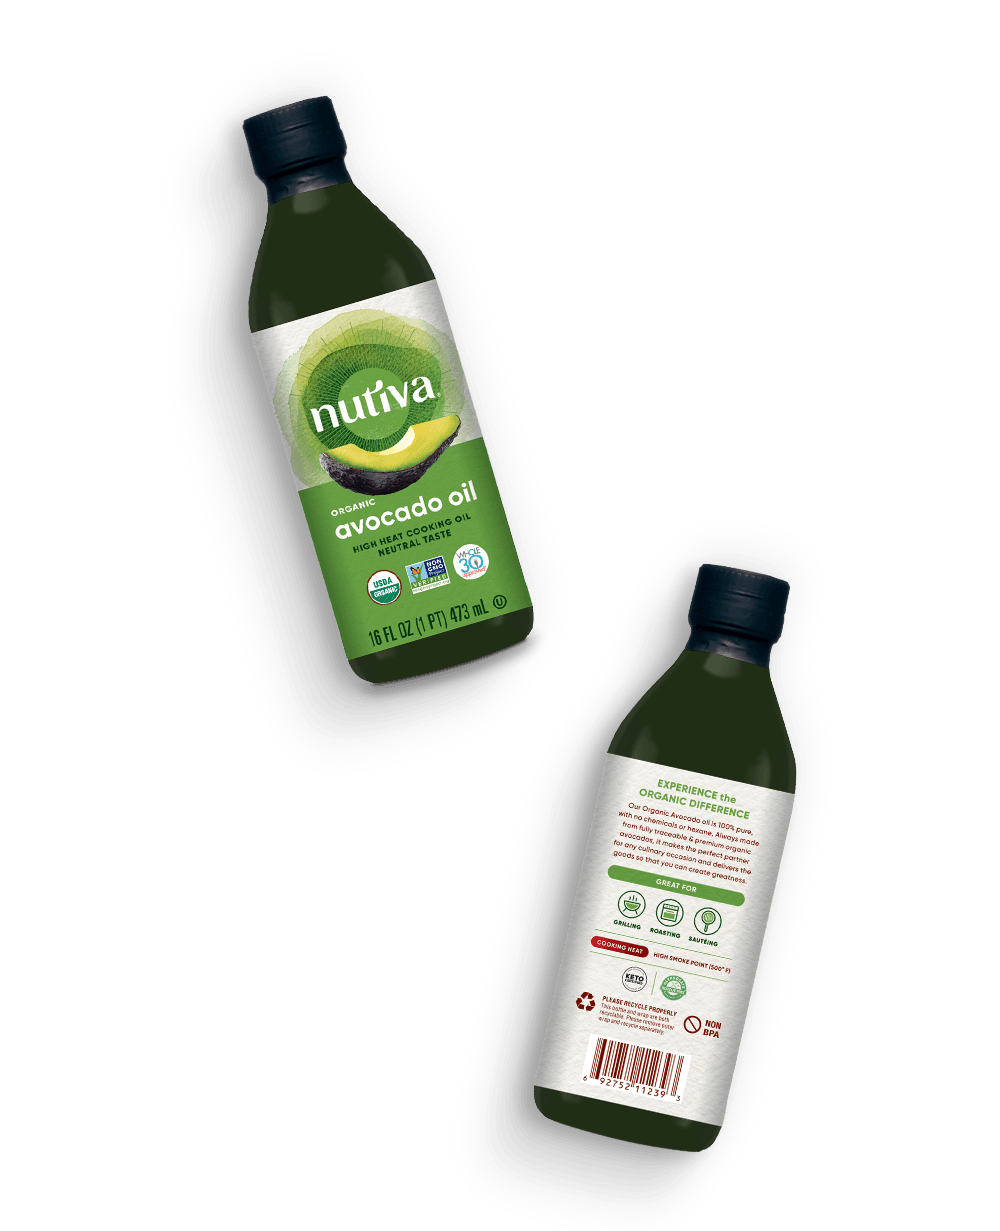 Avocado Oil - The Olive Oil Taproom